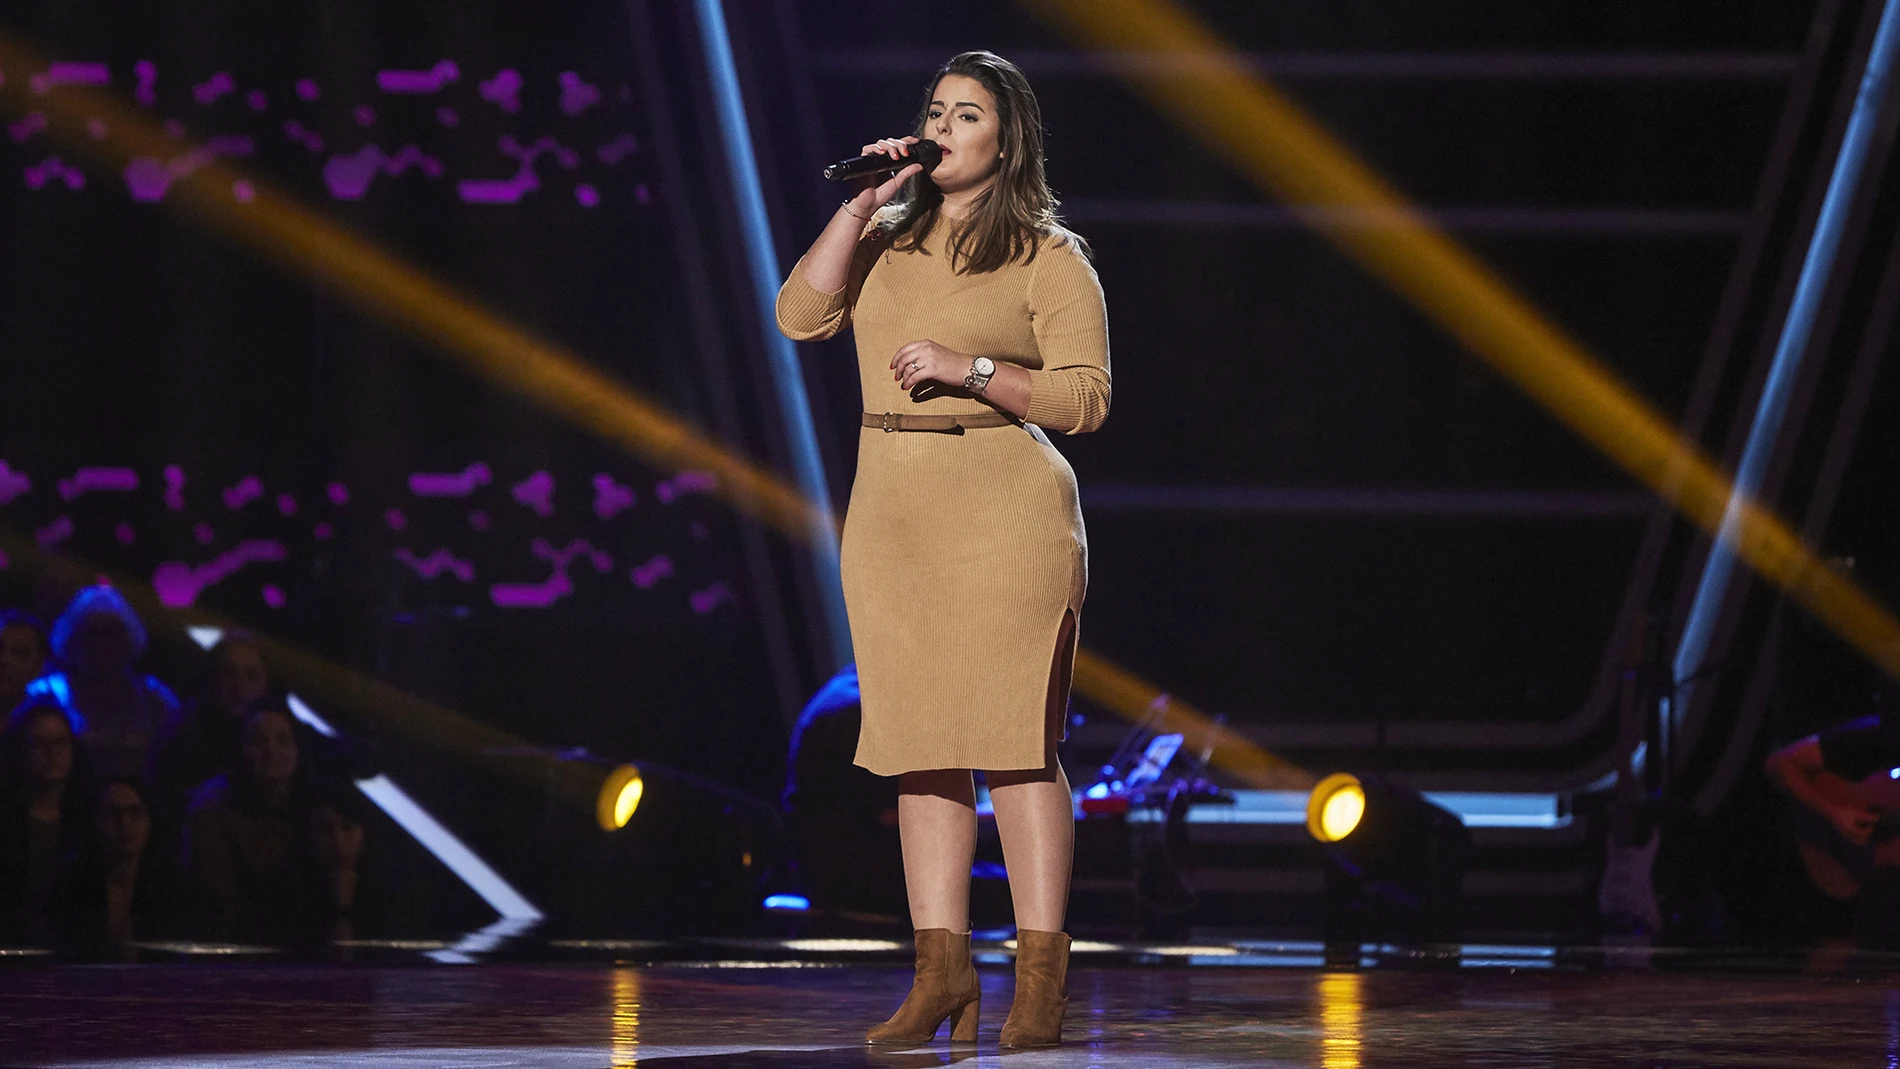 Alba Pérez enternece cantando ‘Algo contigo’ en las Audiciones a ciegas de ‘La Voz’